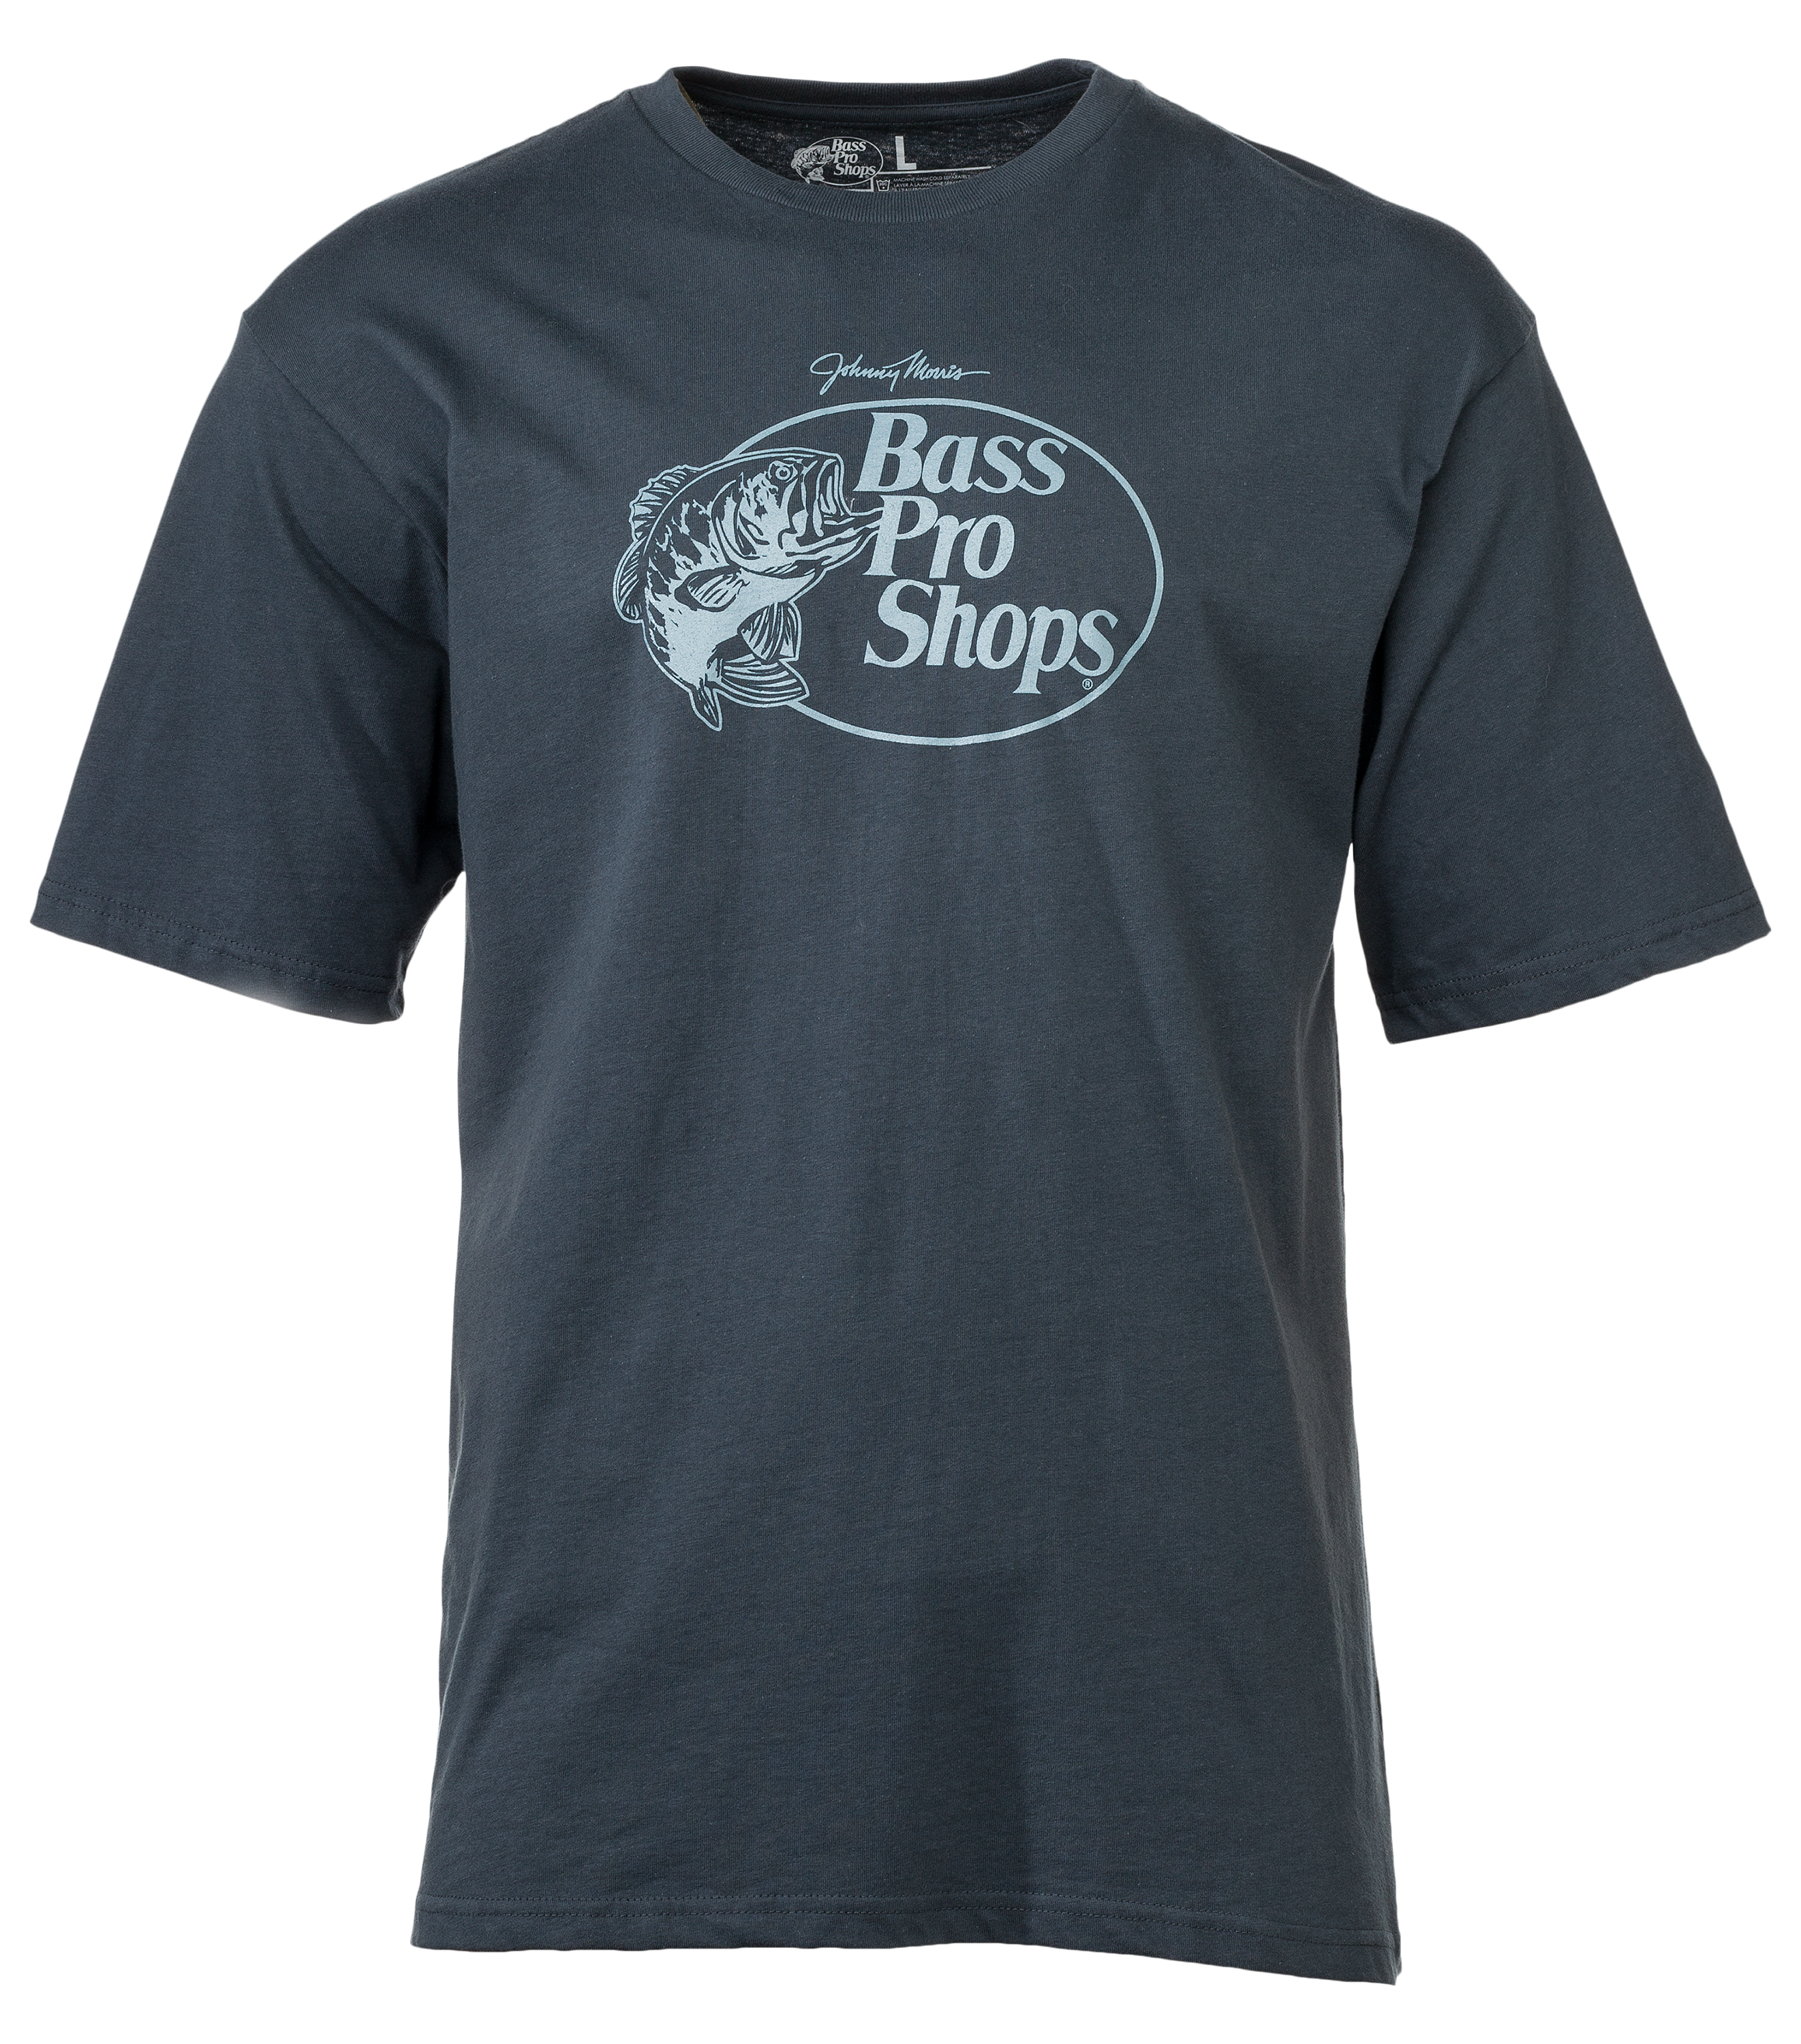 Bass Pro Shops Original Logo 2.0 T-Shirt for Men - Navy - M